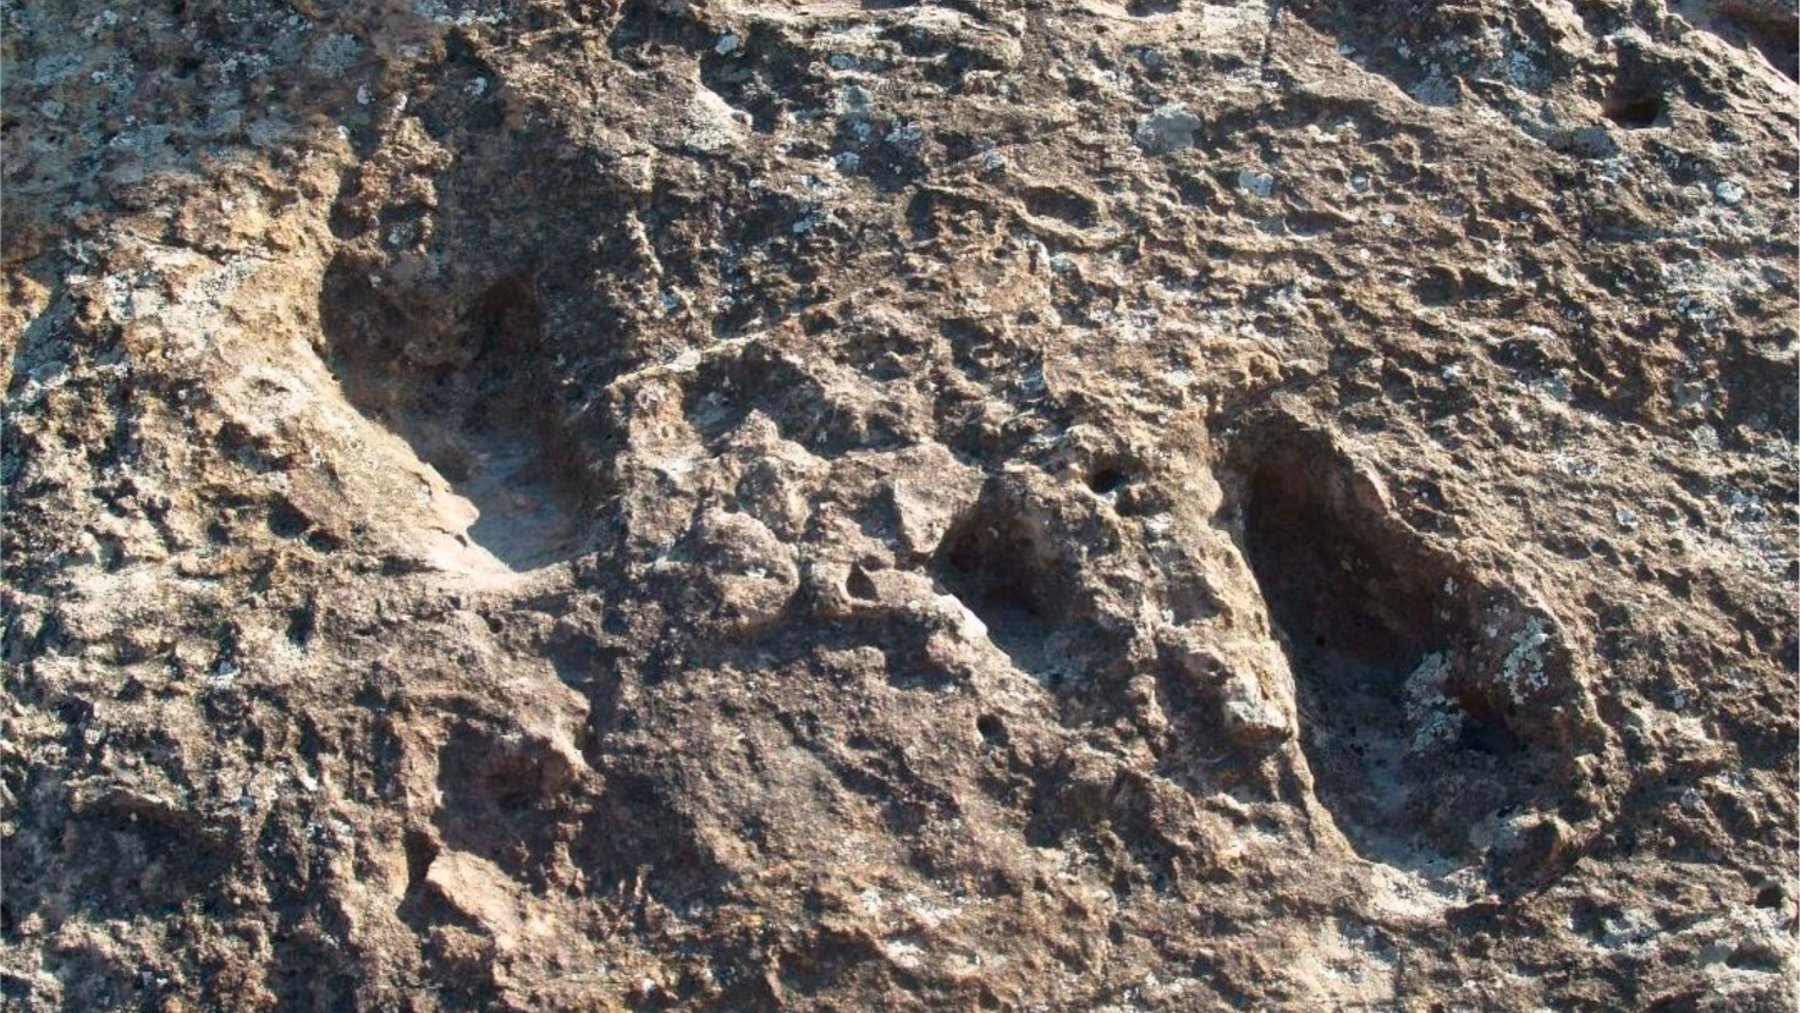 Huellas de Australopithecus halladas en Andalucía (DIPUTACIÓN DE MÁLAGA).